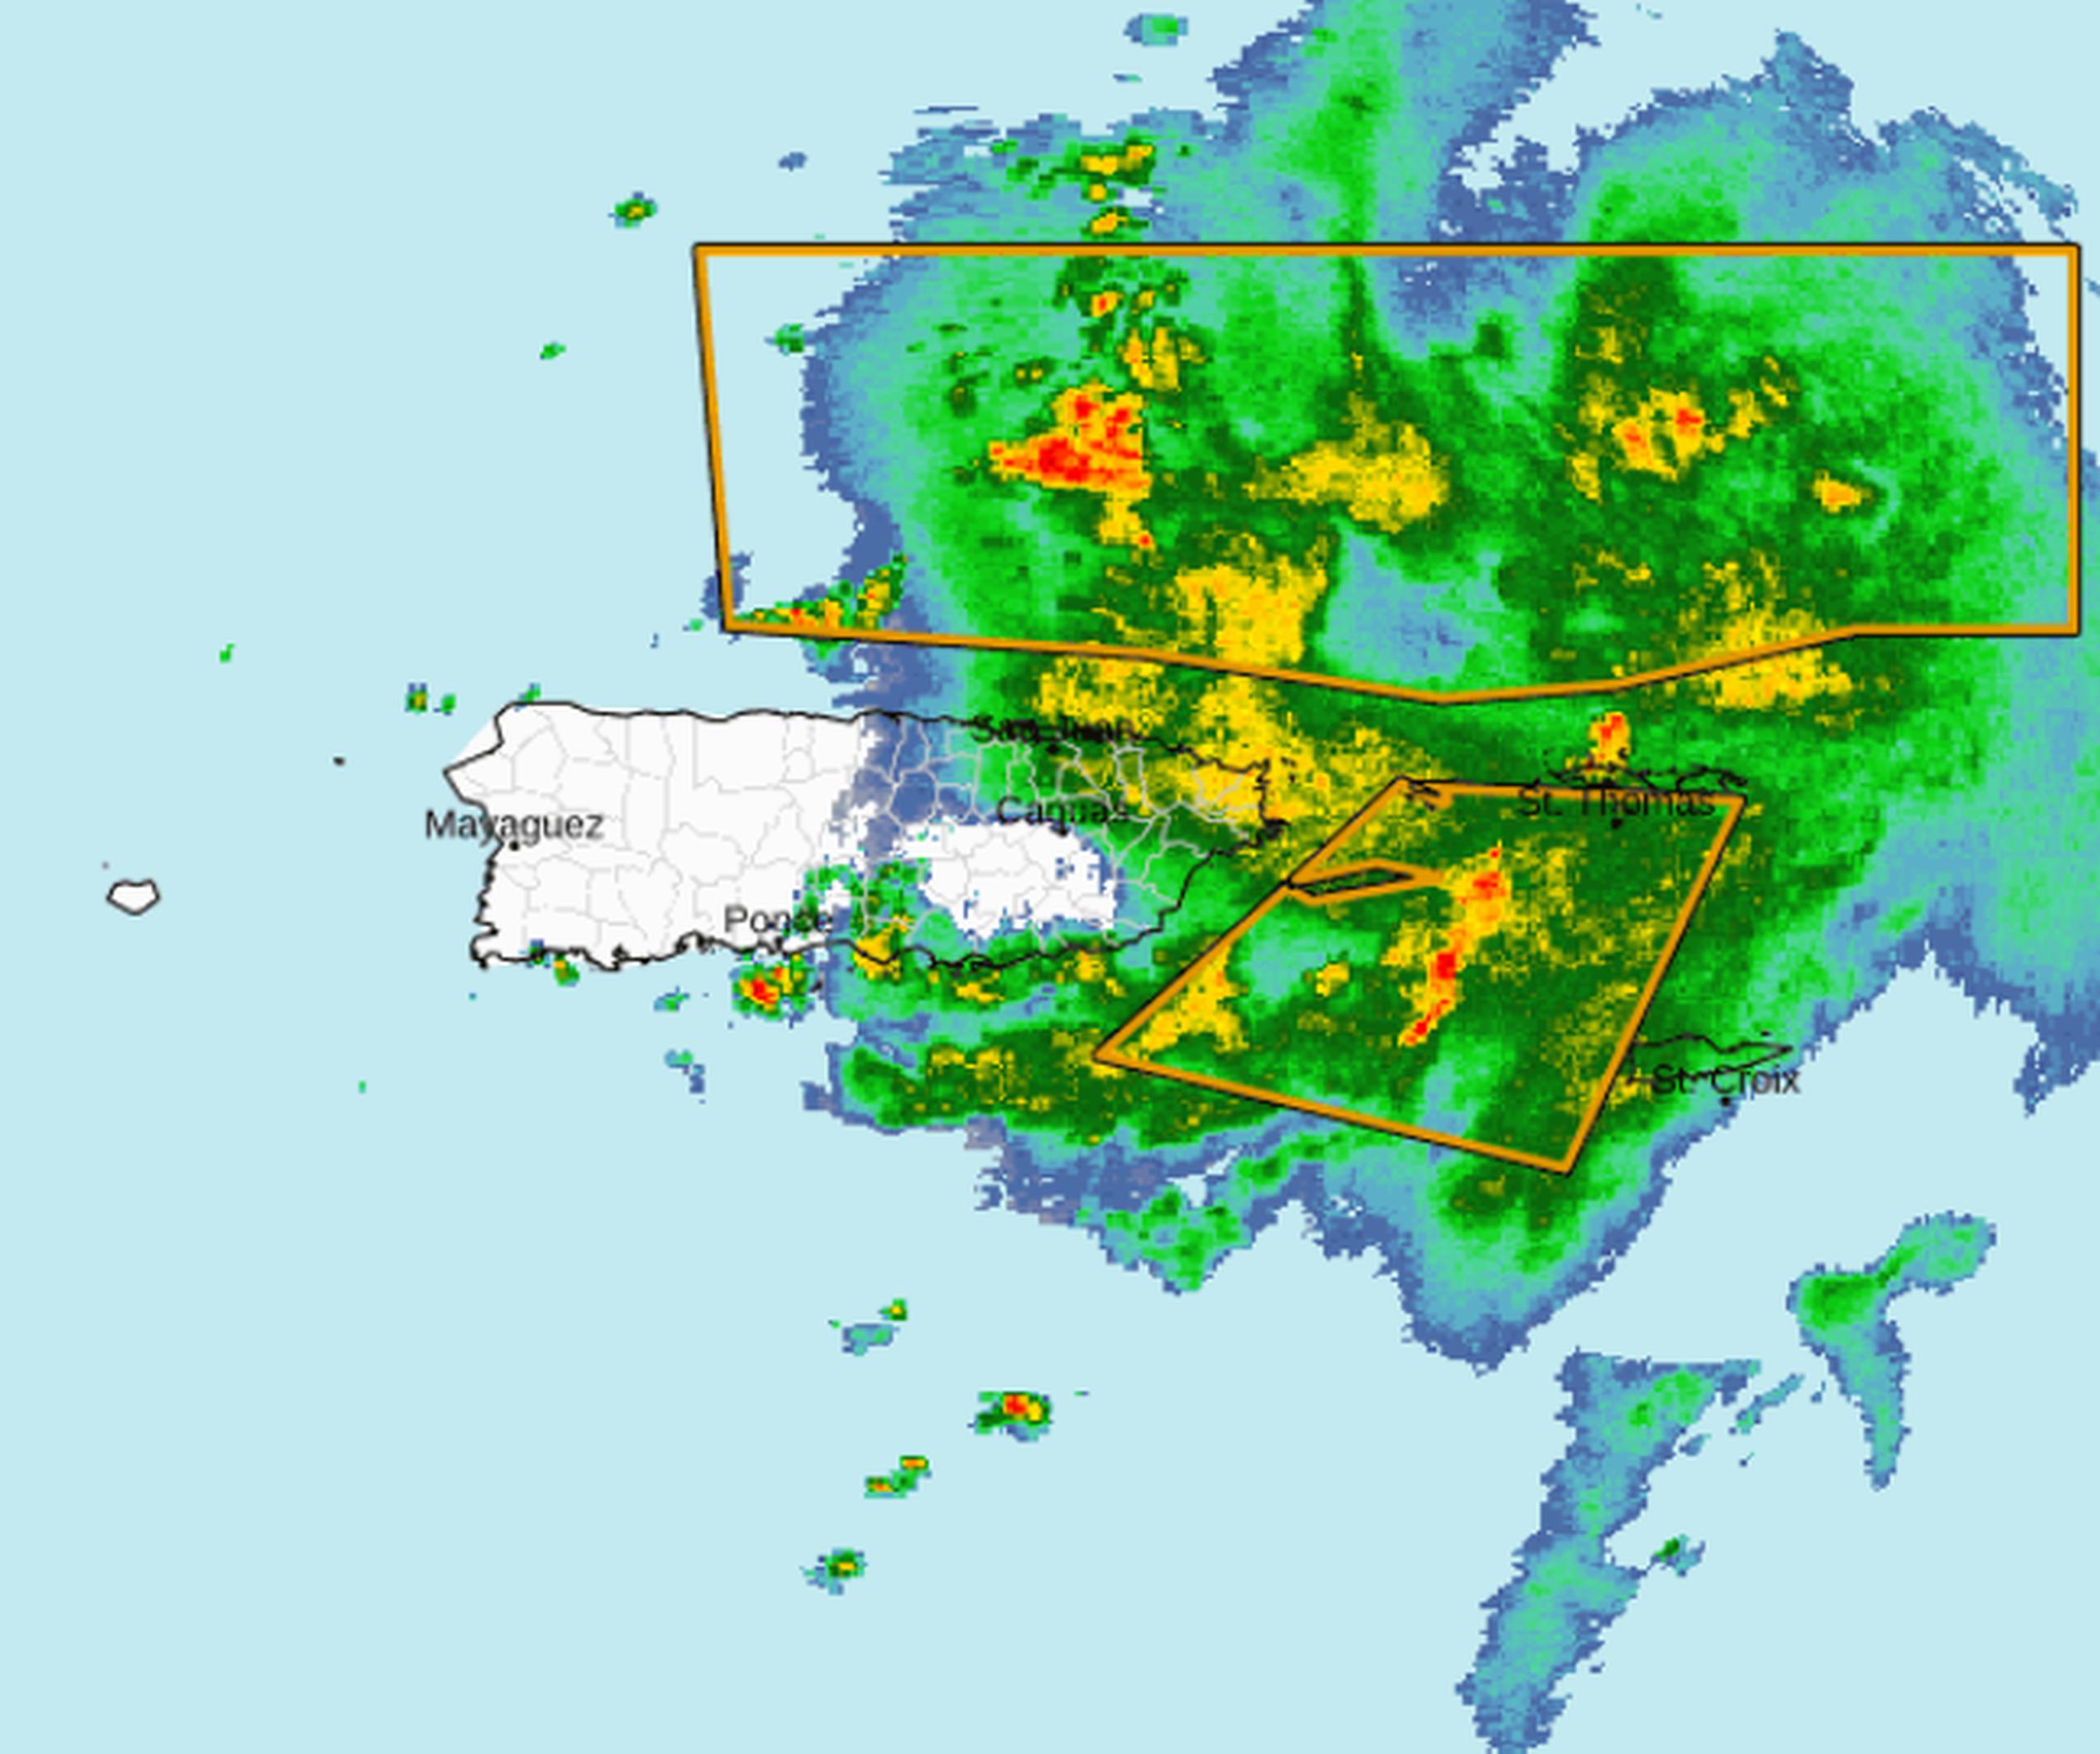 En esta imagen de radar se observa el mal tiempo asociado a la tormenta tropical Philippe, particularmente al este de Puerto Rico.